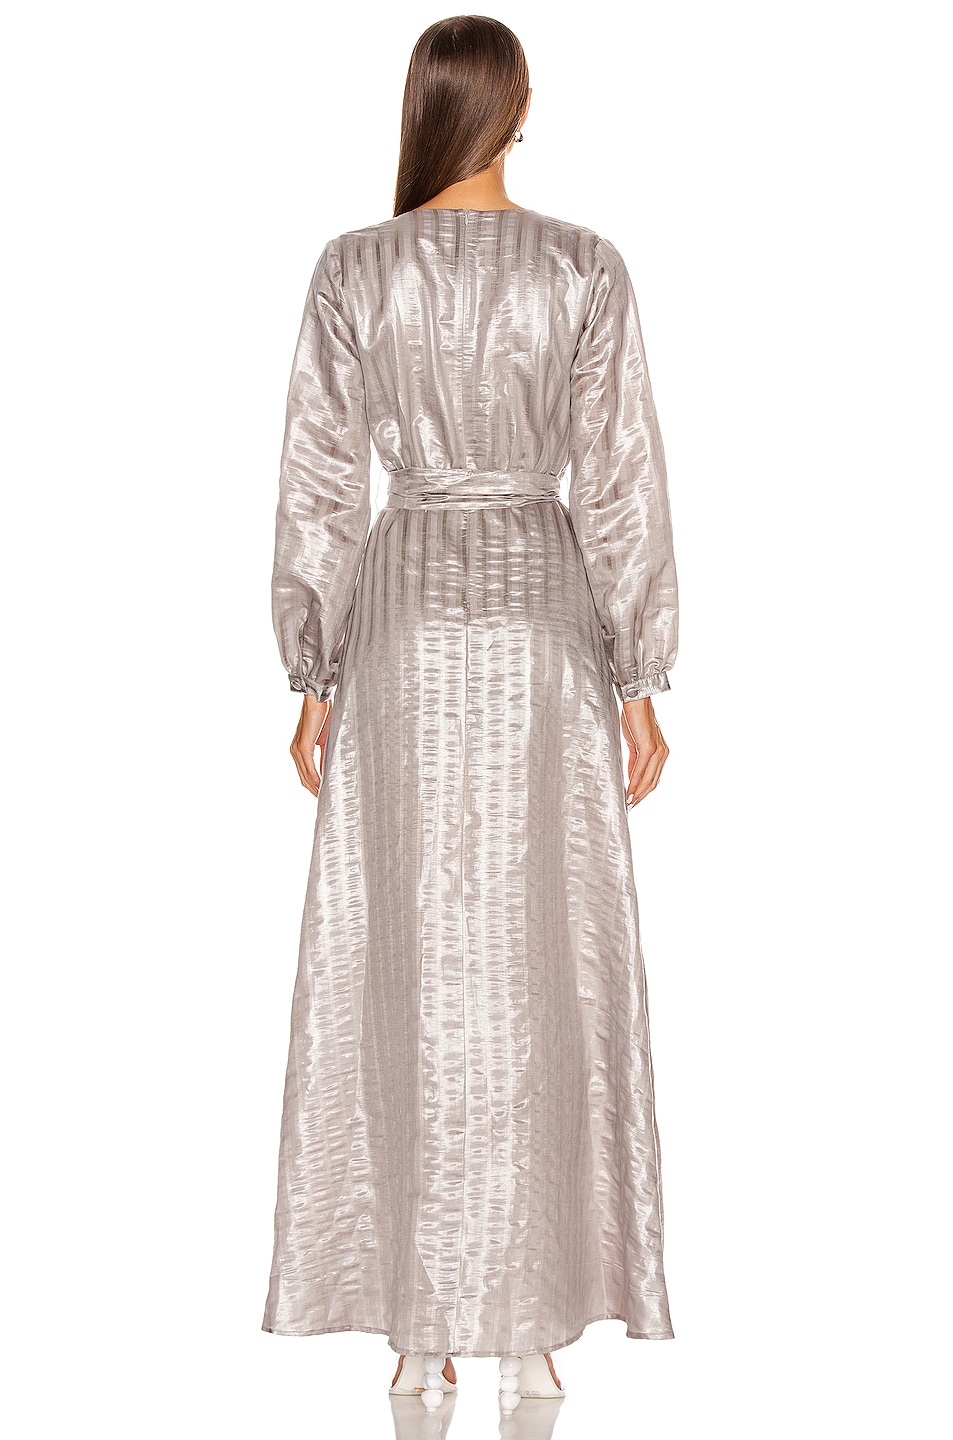 Atoir Misunderstood Dress in Chateau Grey | FWRD